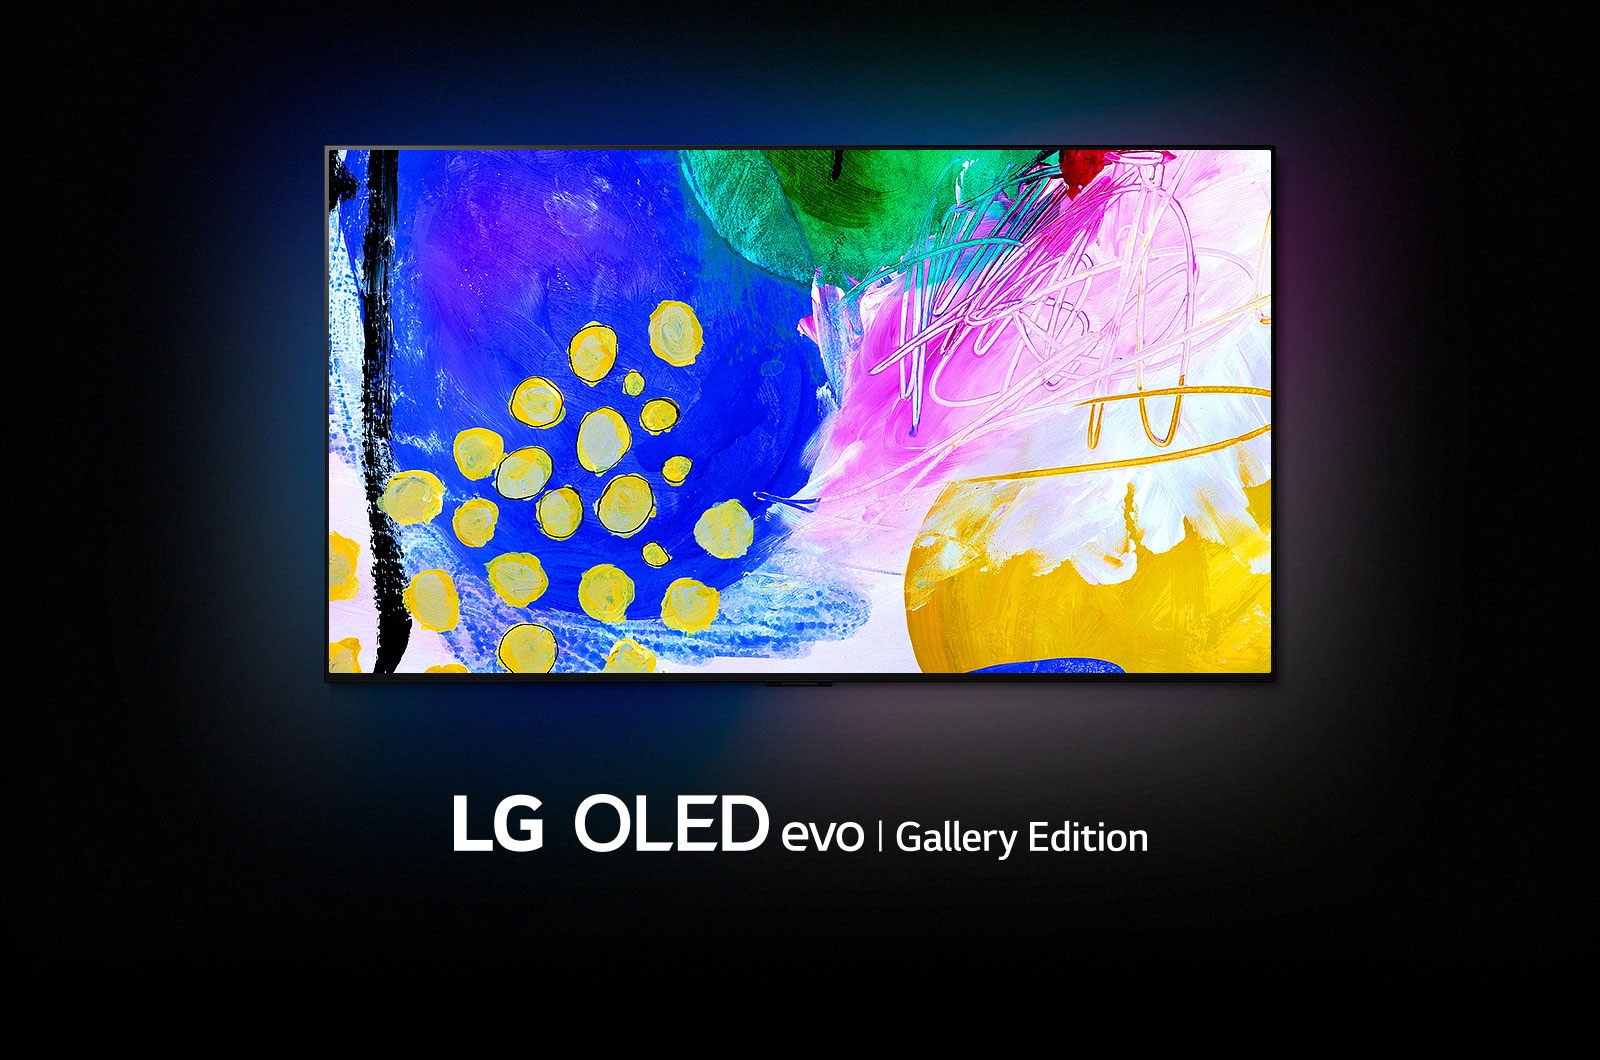 LG OLED G2 nalazi se u mračnoj prostoriji sa šarenim apstraktnim umjetničkim djelima različitih oblika na zaslonu i riječima „LG OLED evo Gallery Edition” ispod.